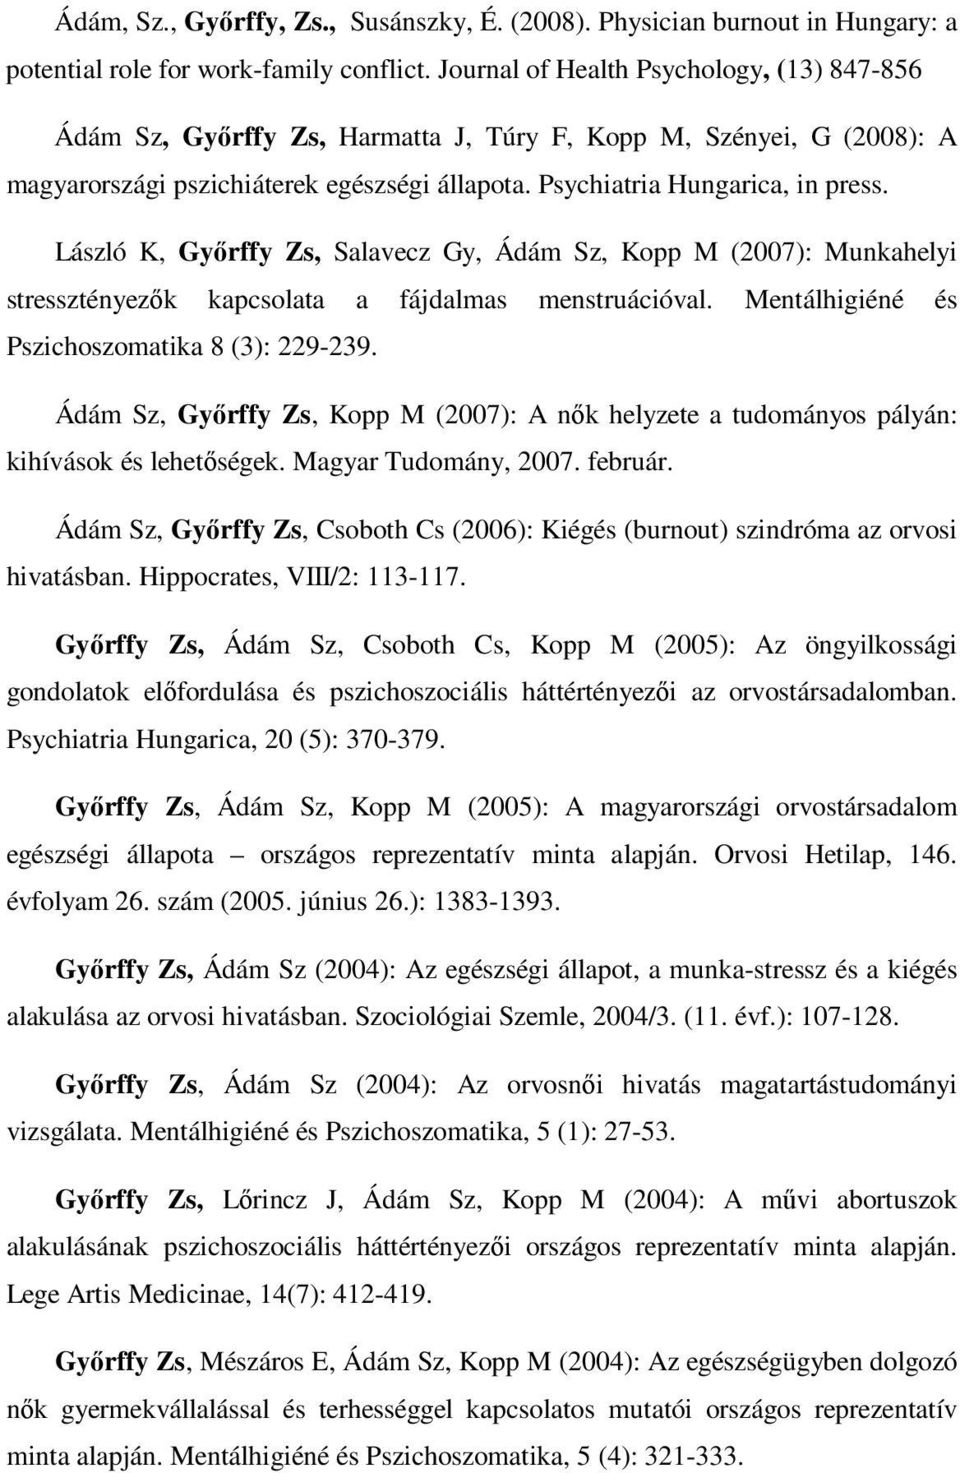 László K, Győrffy Zs, Salavecz Gy, Ádám Sz, Kopp M (2007): Munkahelyi stressztényezők kapcsolata a fájdalmas menstruációval. Mentálhigiéné és Pszichoszomatika 8 (3): 229-239.